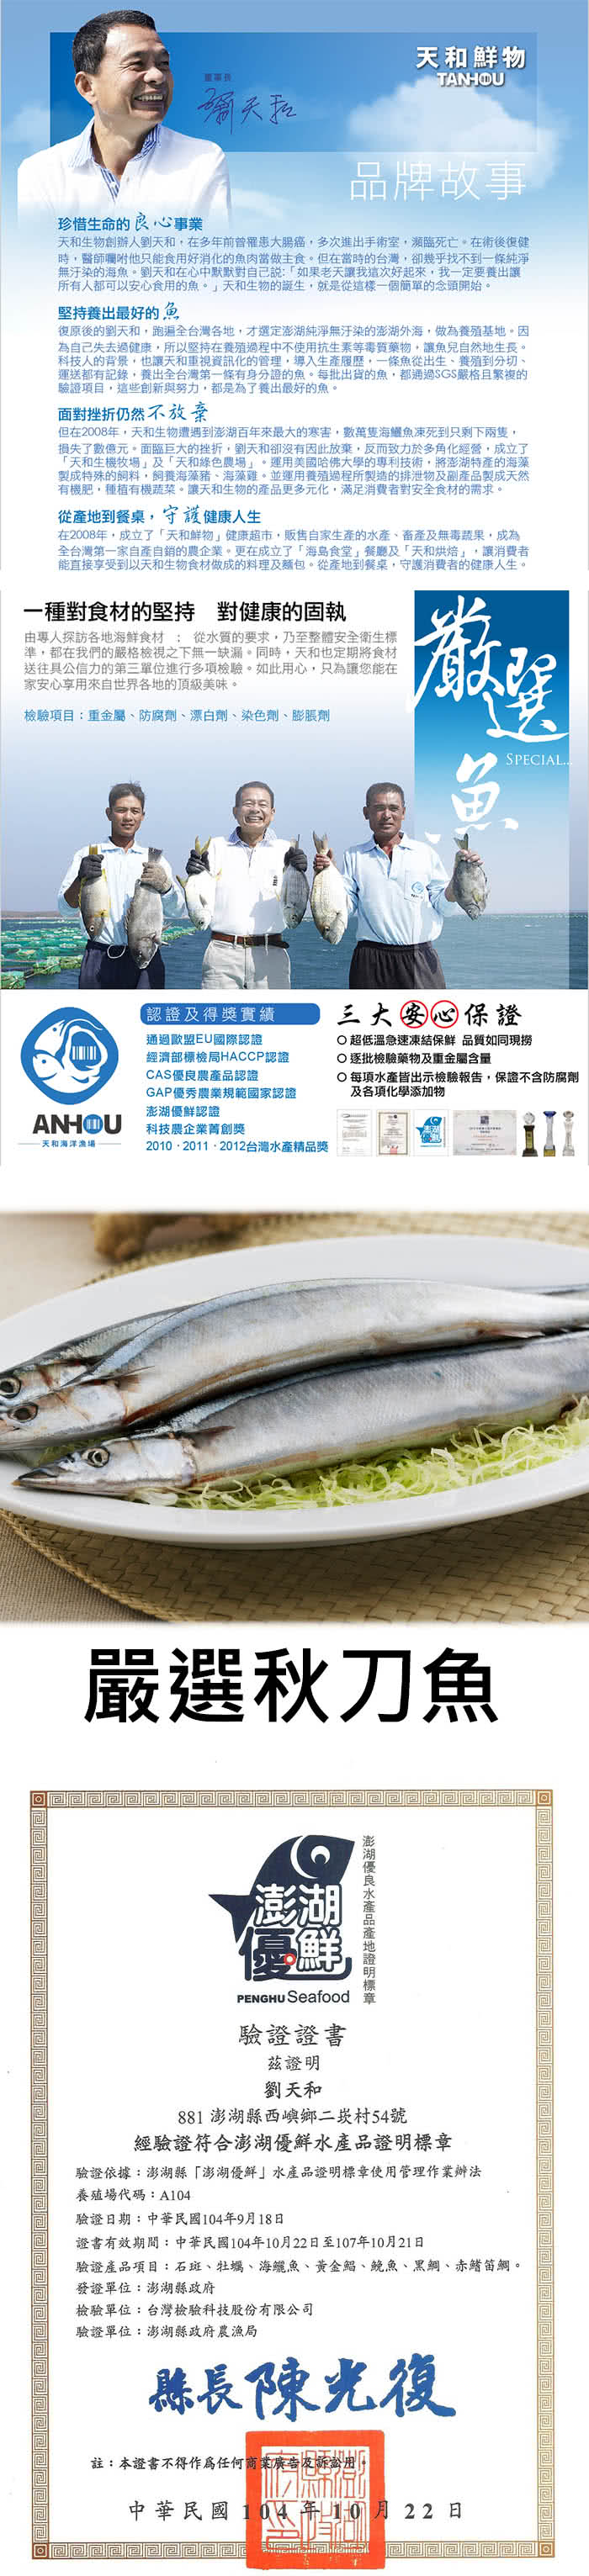 【天和鮮物】嚴選秋刀魚18包(450g/包)